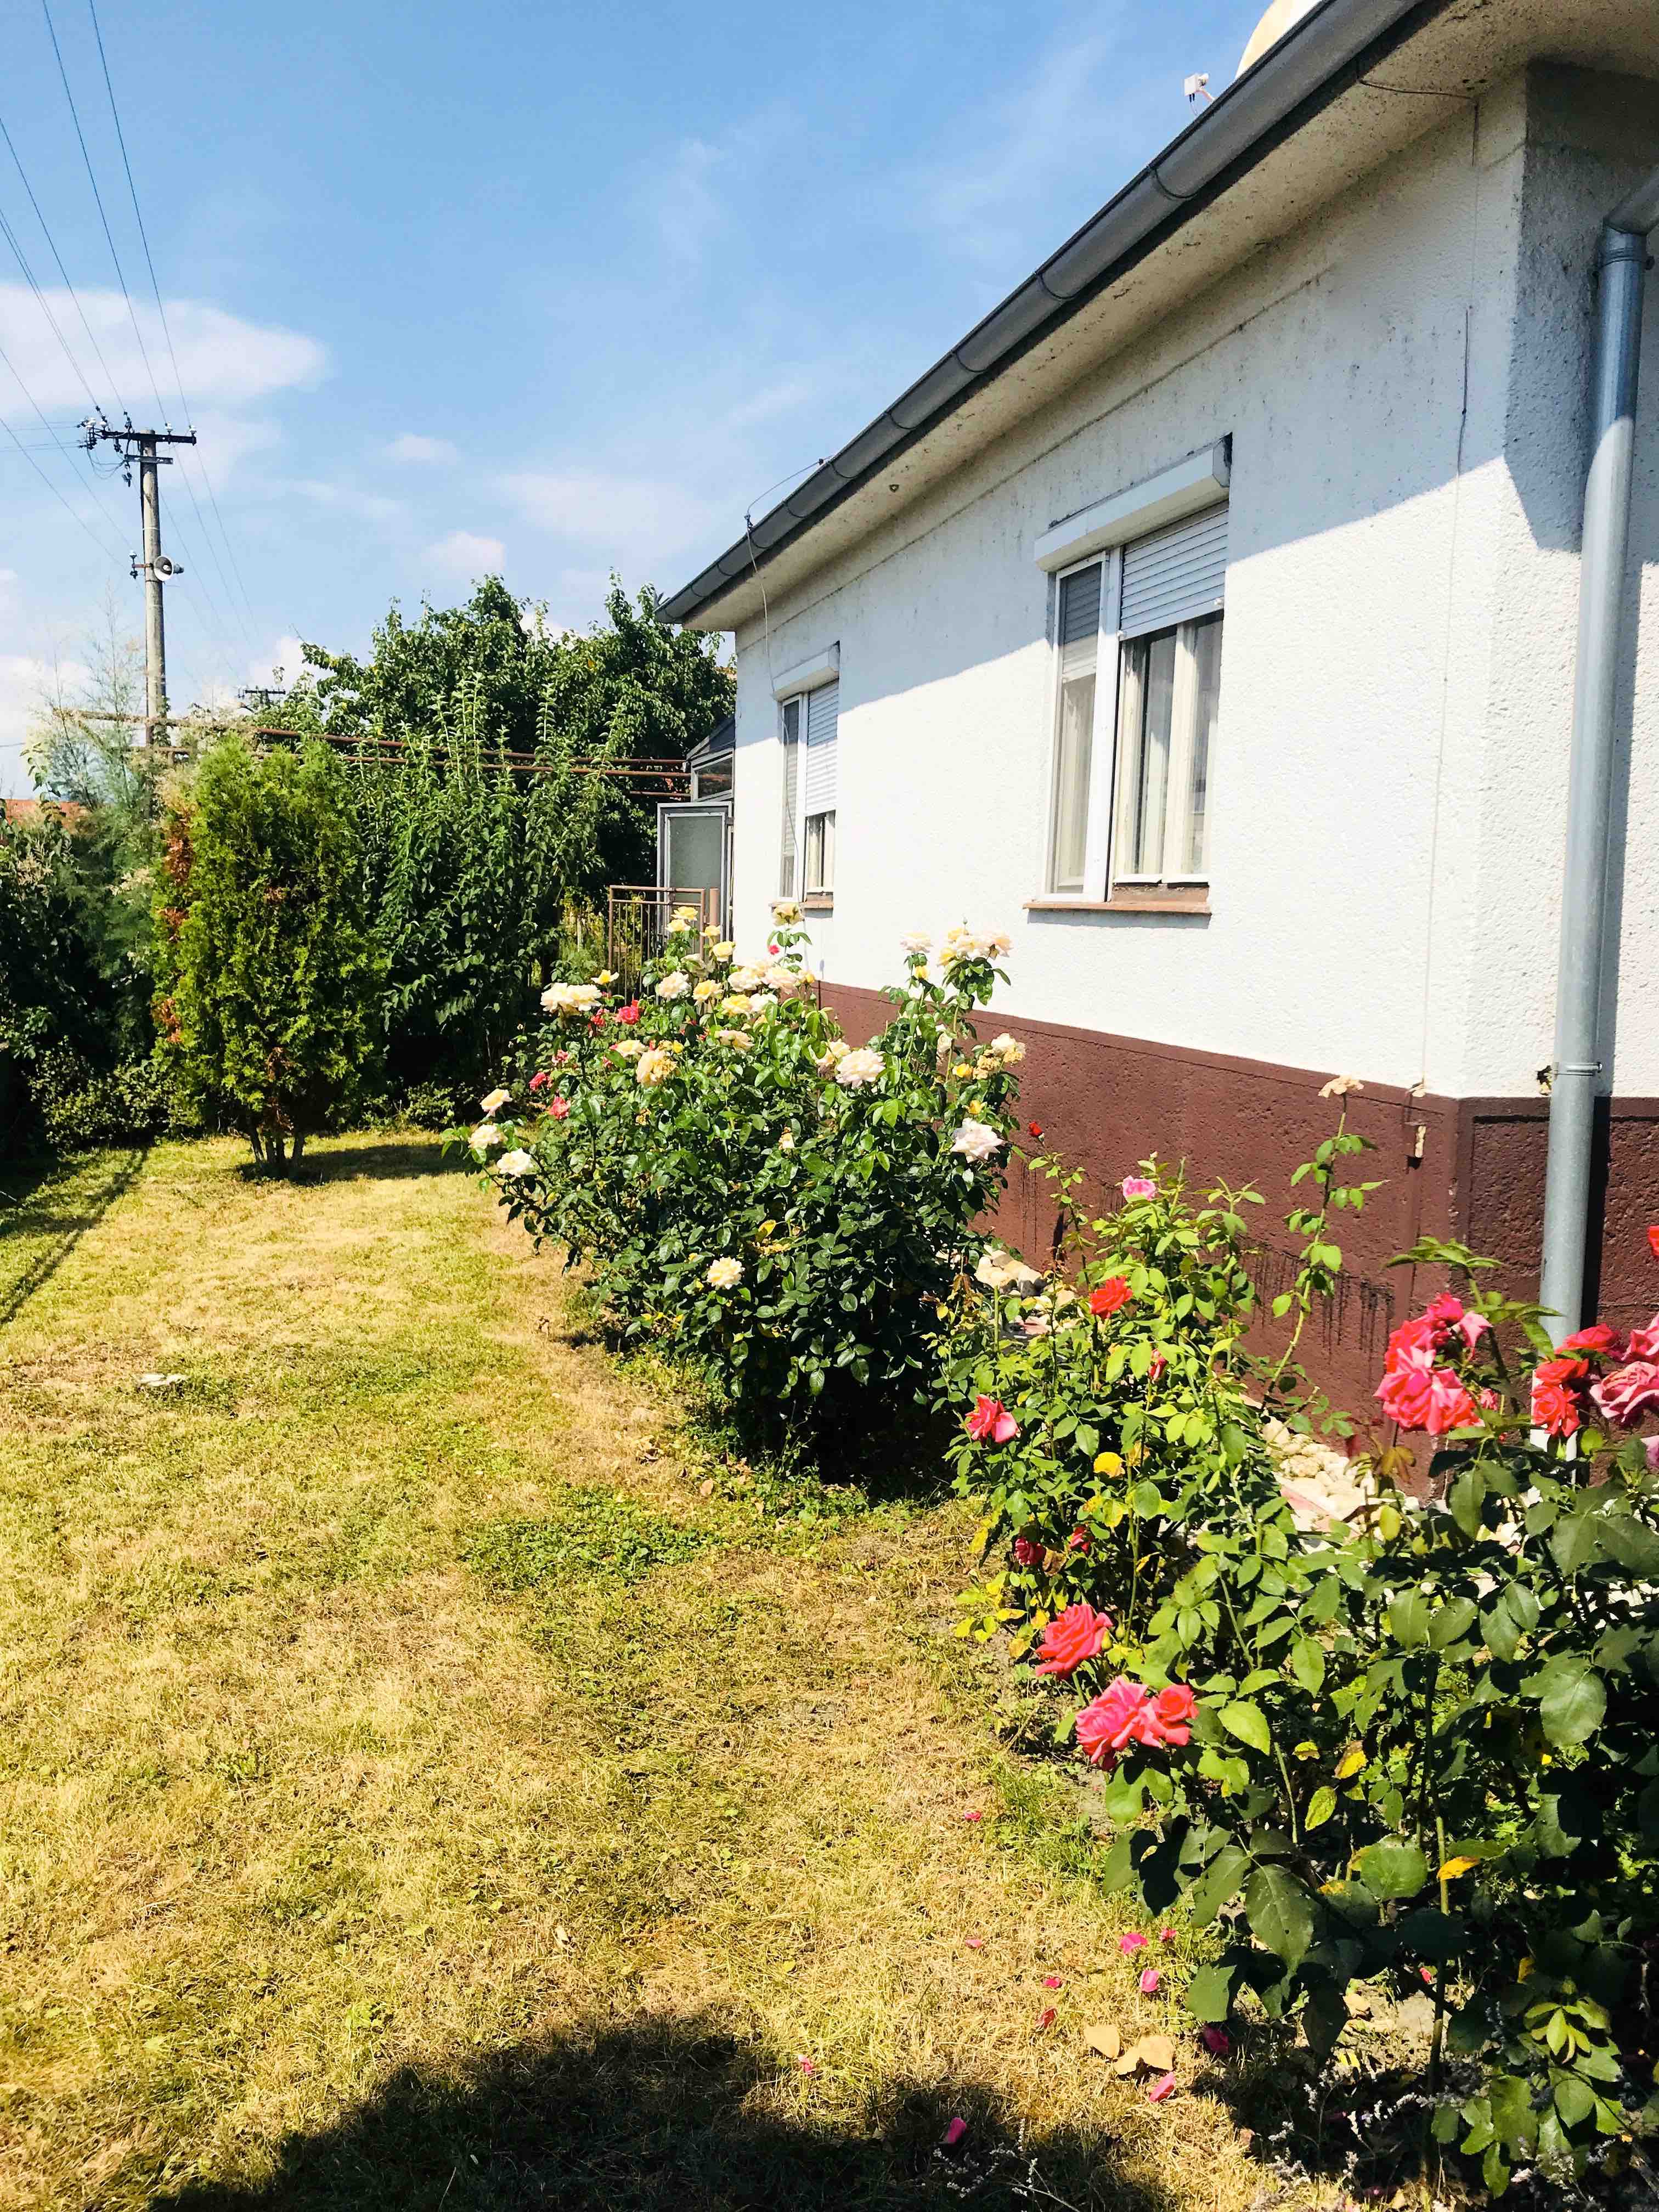 GREGORY Real, PREDAJ 4 izb rodinný dom s garážou, s krásnym vinohradom a úrodnou záhradou priamo v dedinke Slovenský Grob, okr. Pezinok